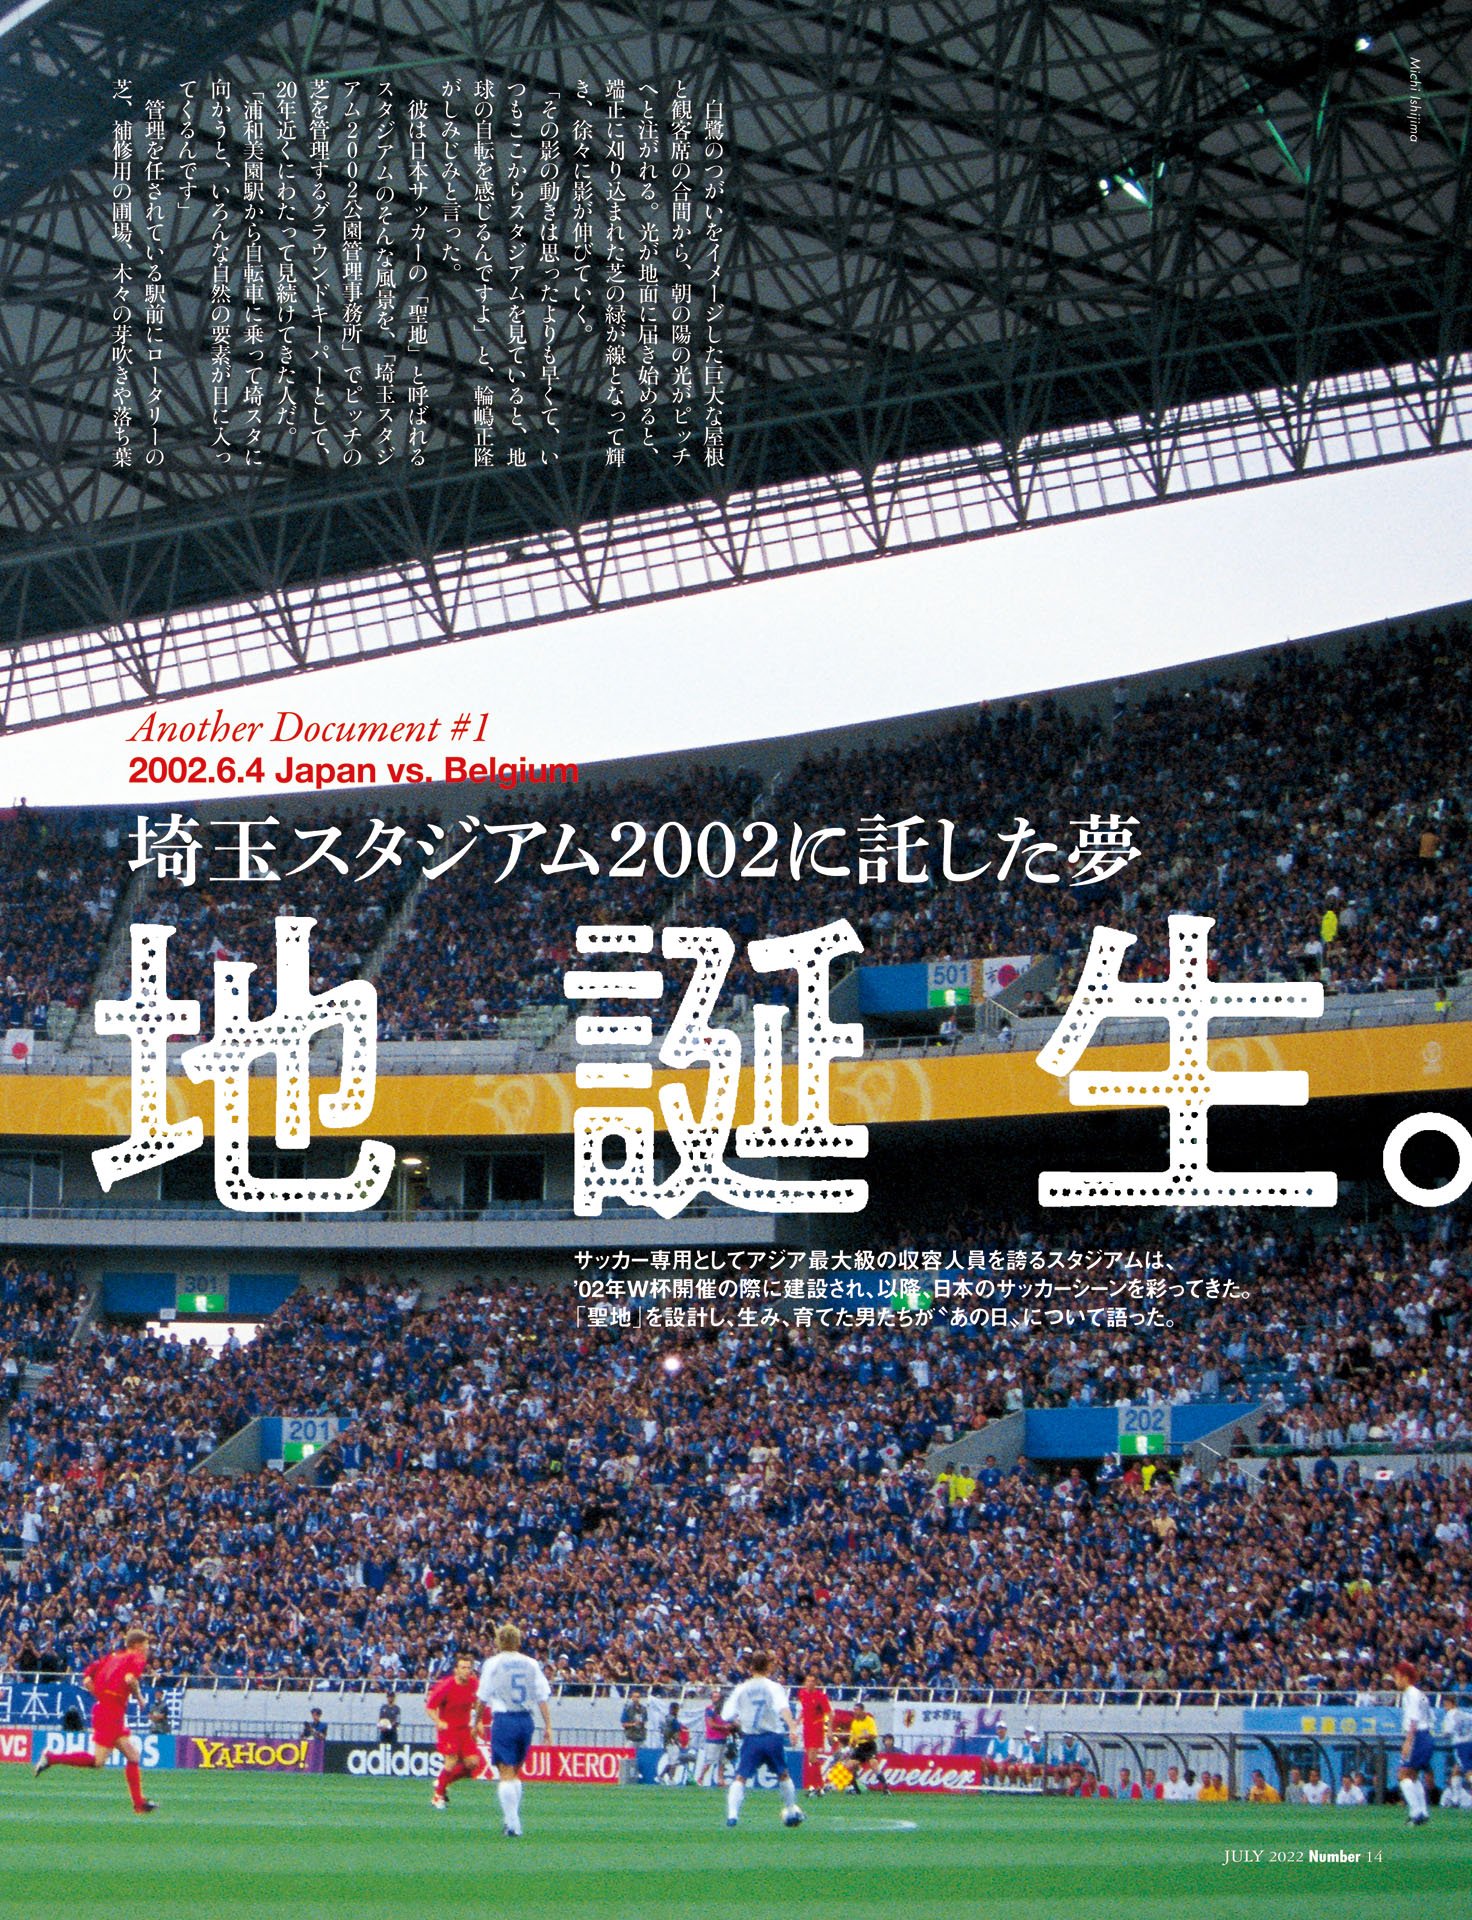 ［ドキュメント（1） vs.ベルギー］聖地誕生――証言：小野伸二「埼玉スタジアムに託した夢」